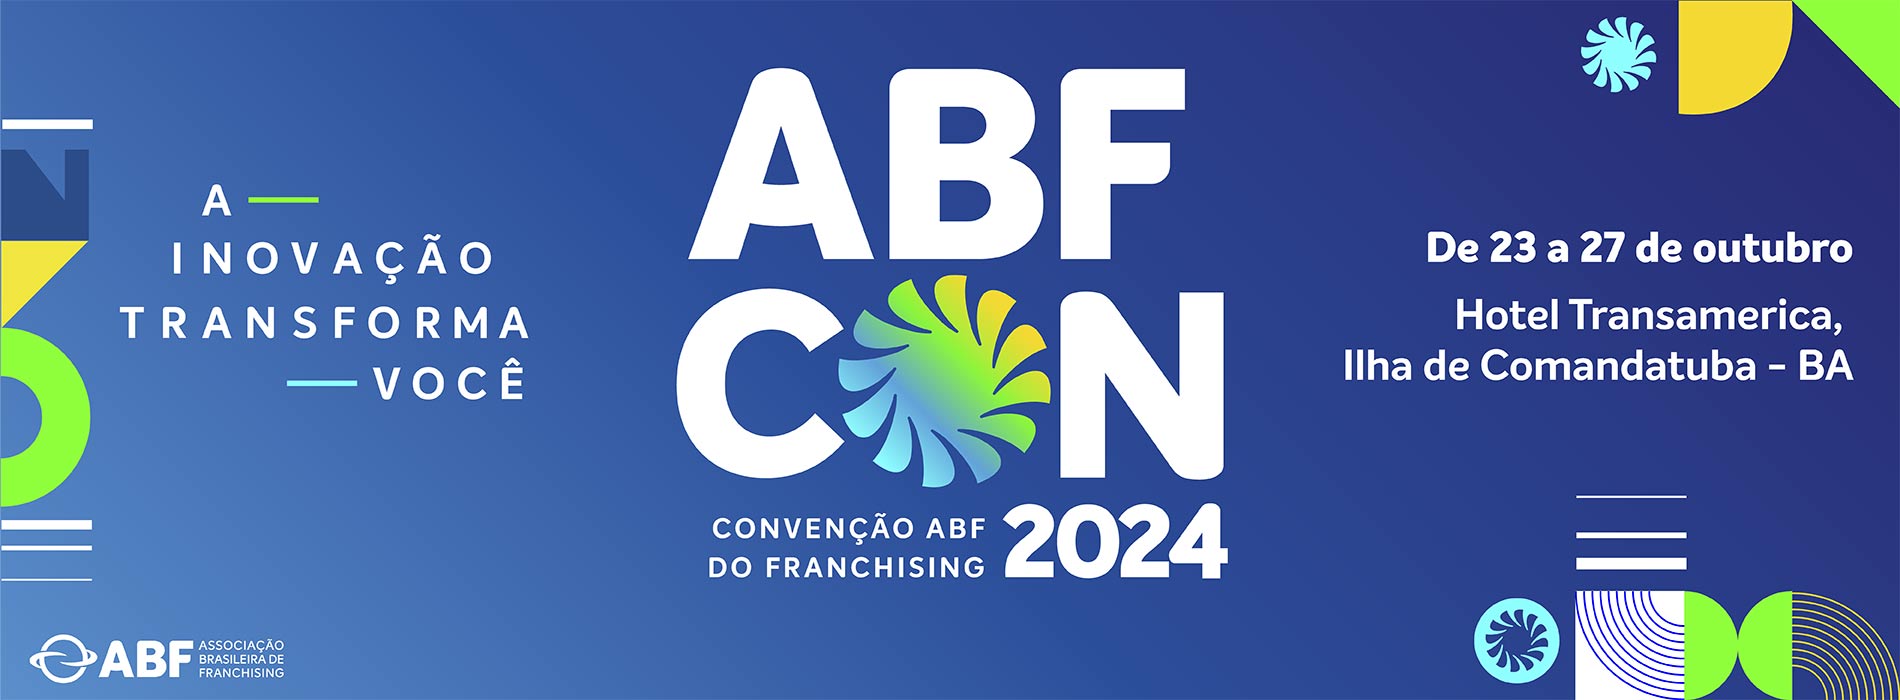 Convenção ABF